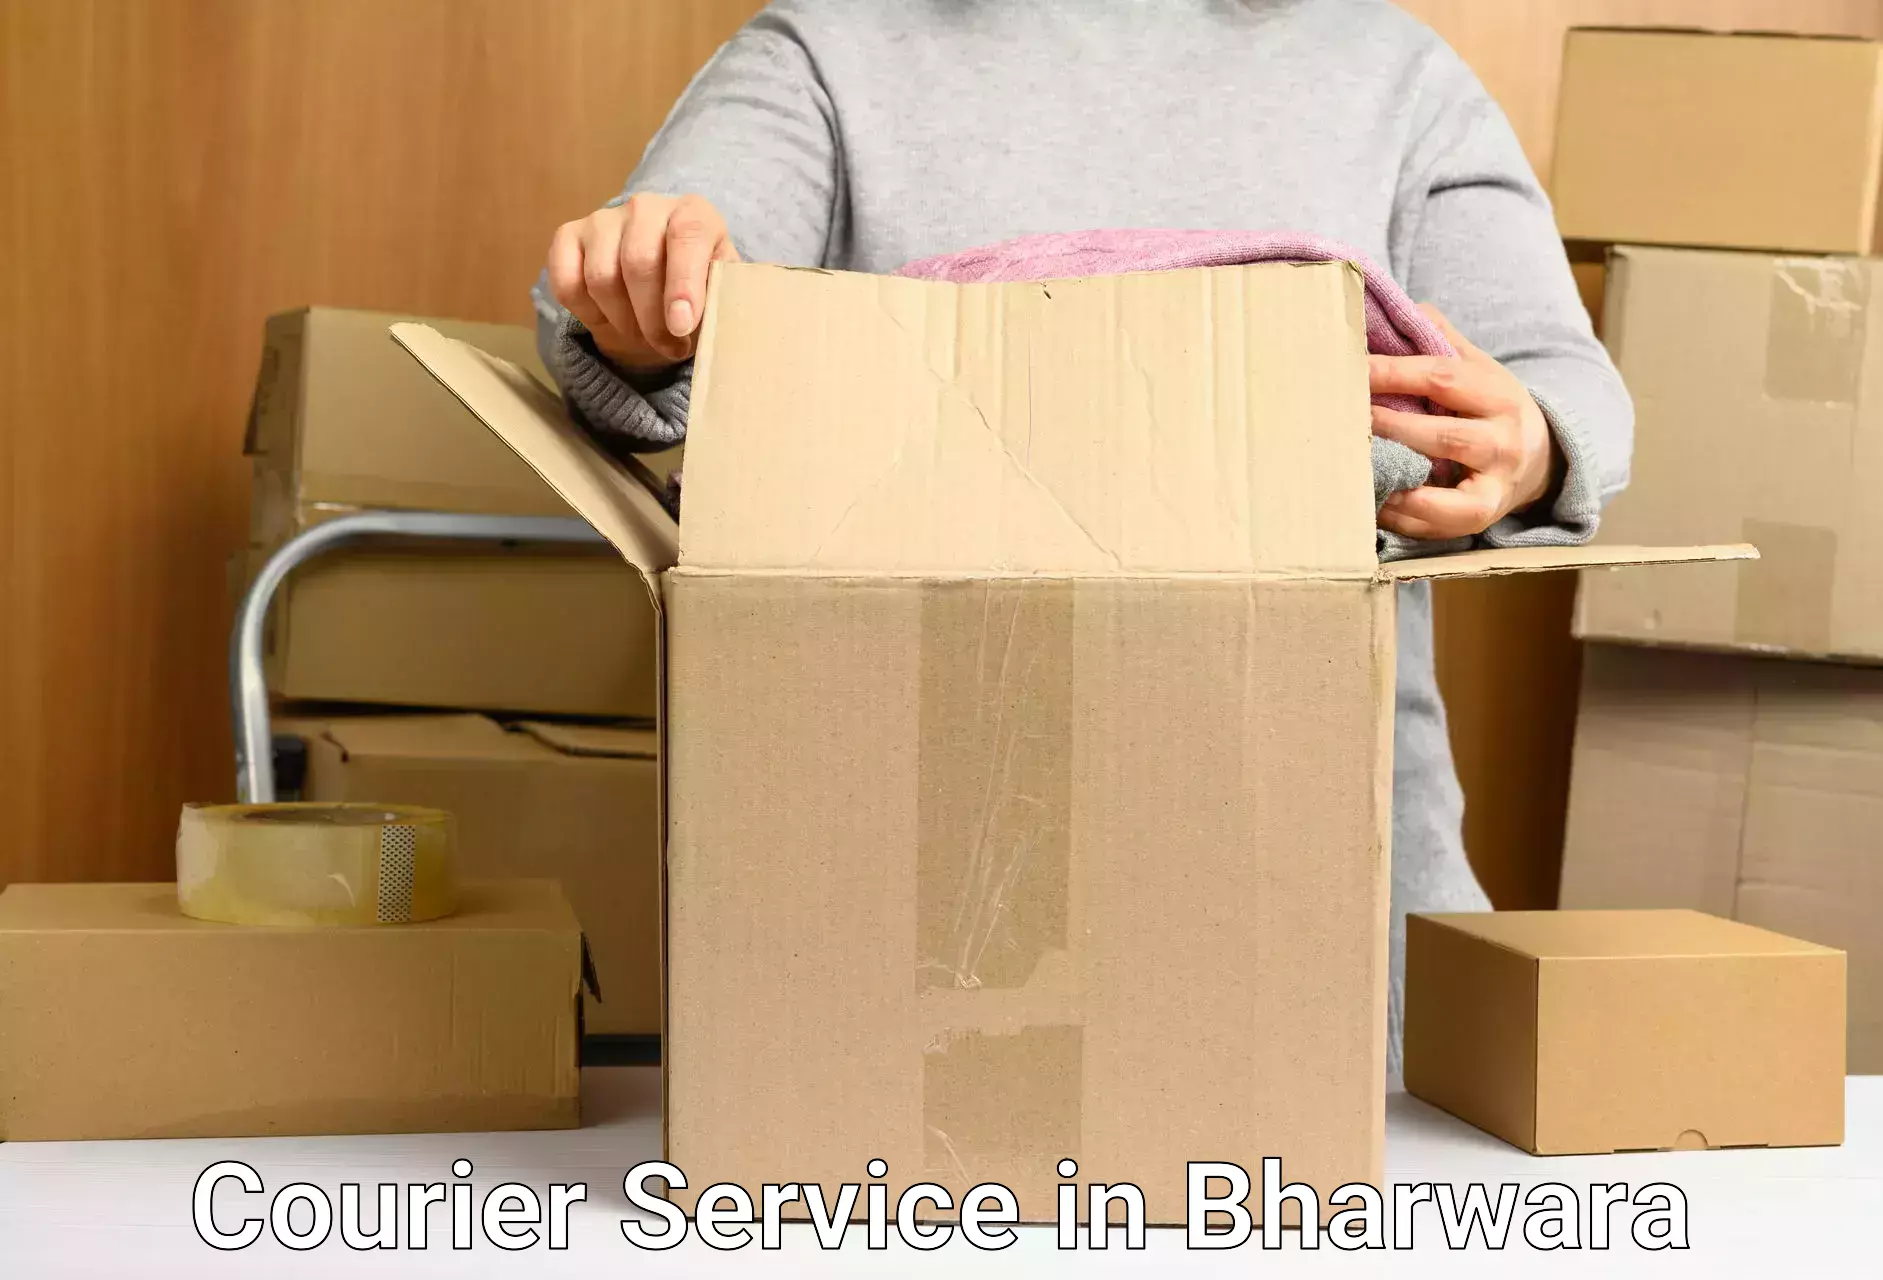 Urban courier service in Bharwara